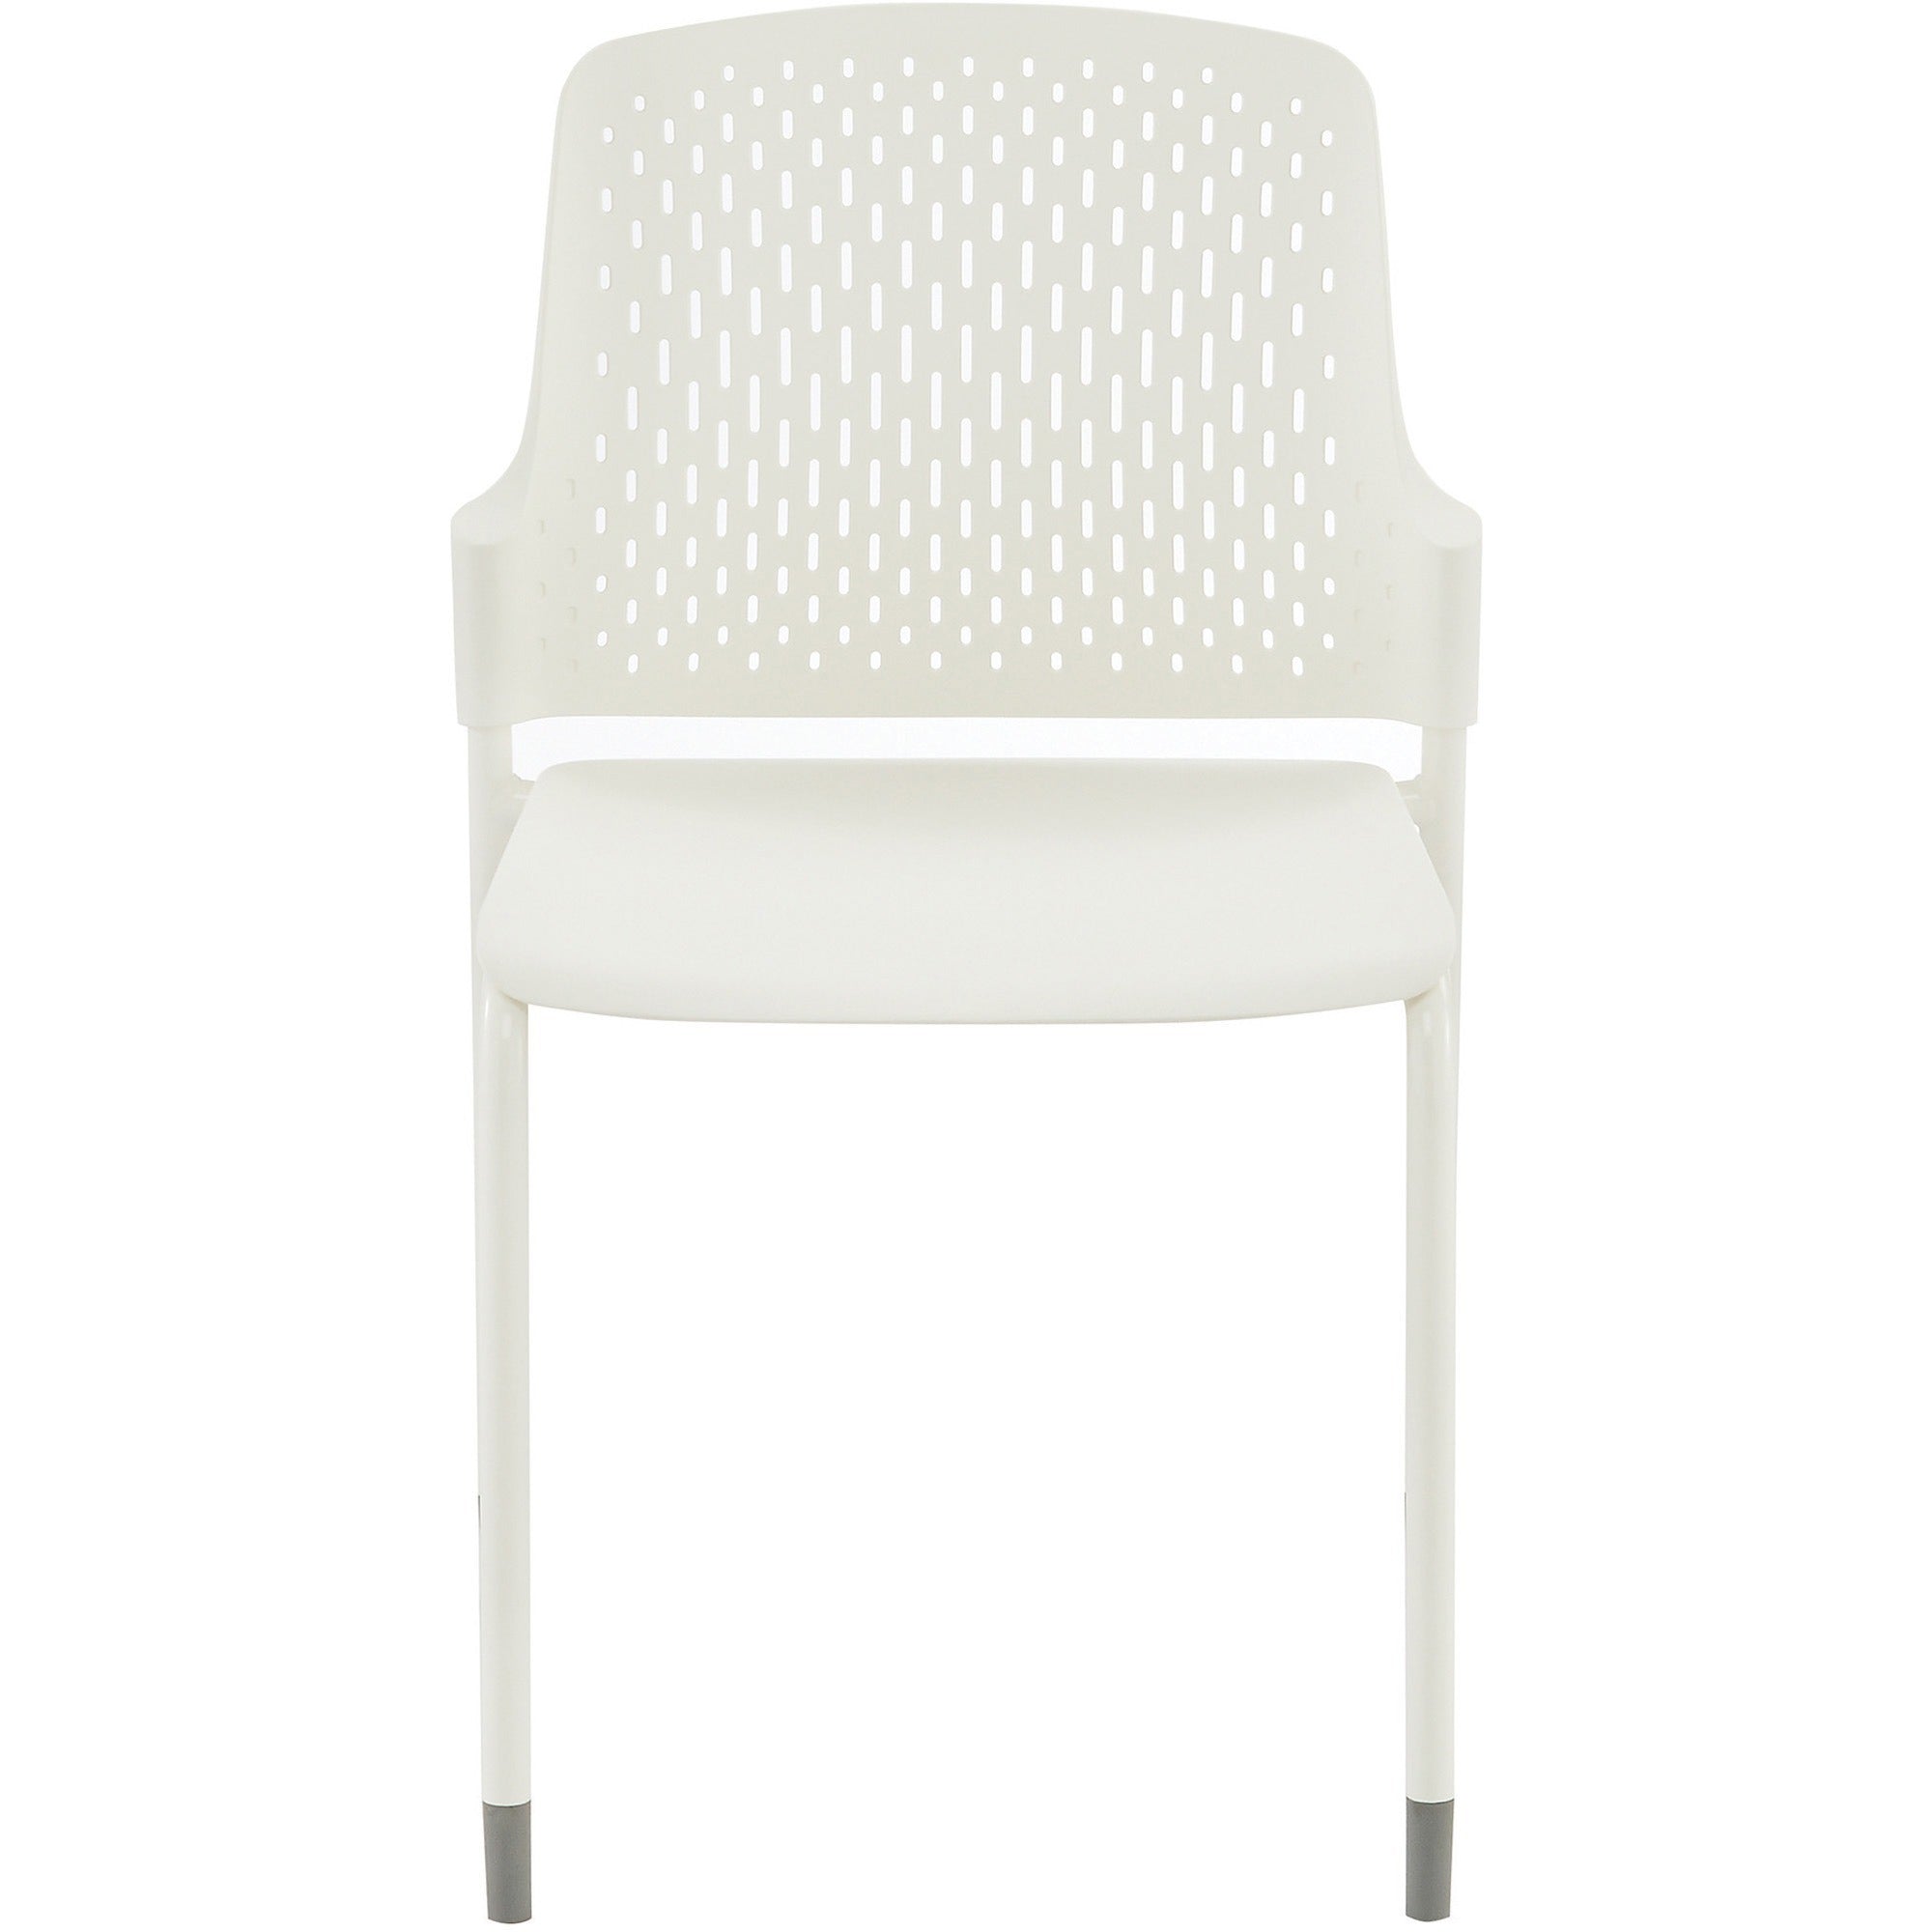 safco-next-stack-chair-white-polypropylene-seat-white-polypropylene-back-tubular-steel-frame-four-legged-base-4-carton_saf4287wh - 2